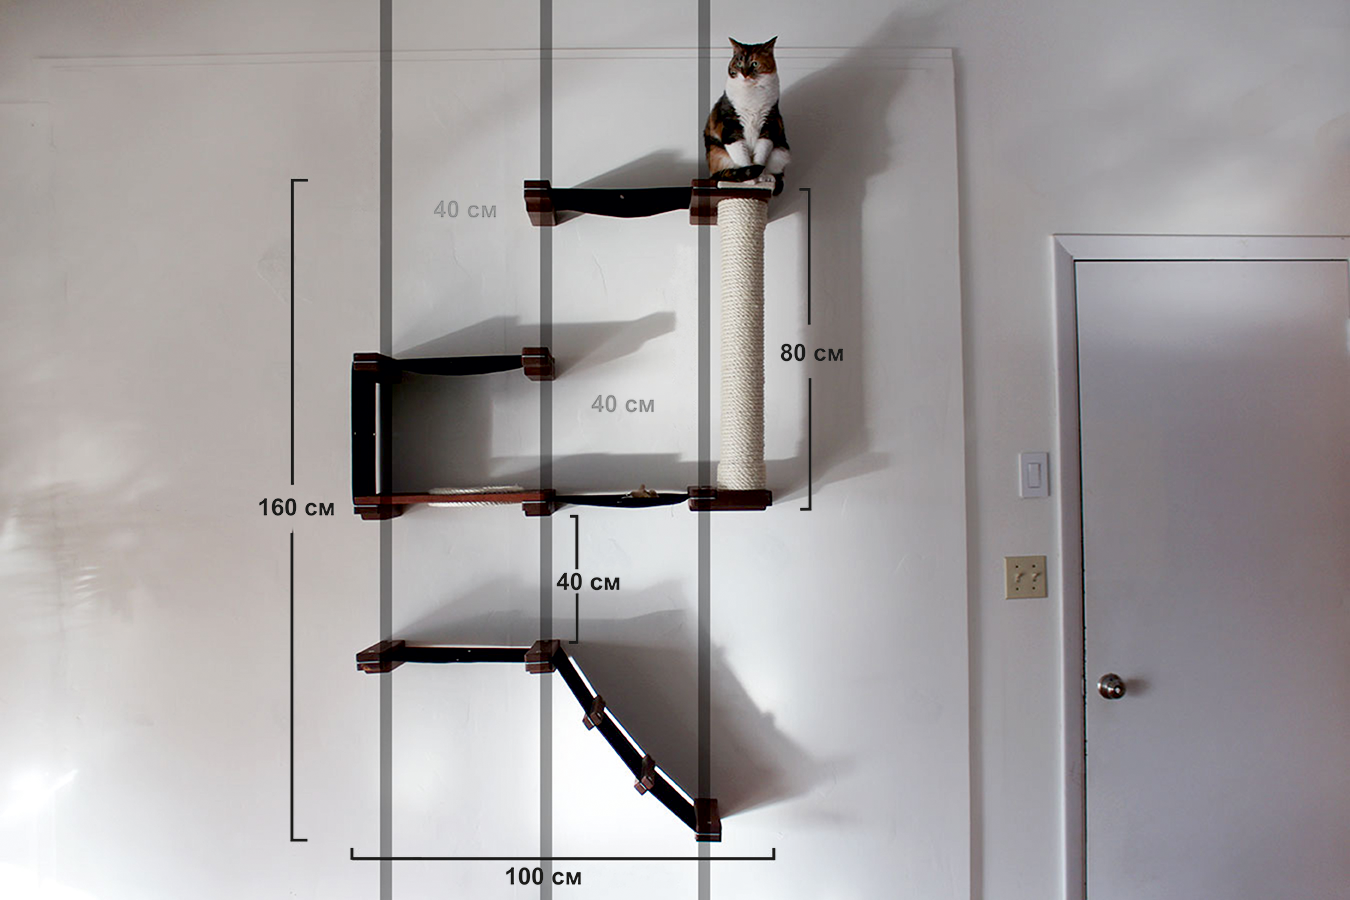 Правильная когтеточка своими руками для кошки: конструкция и типы, материалы, сборка